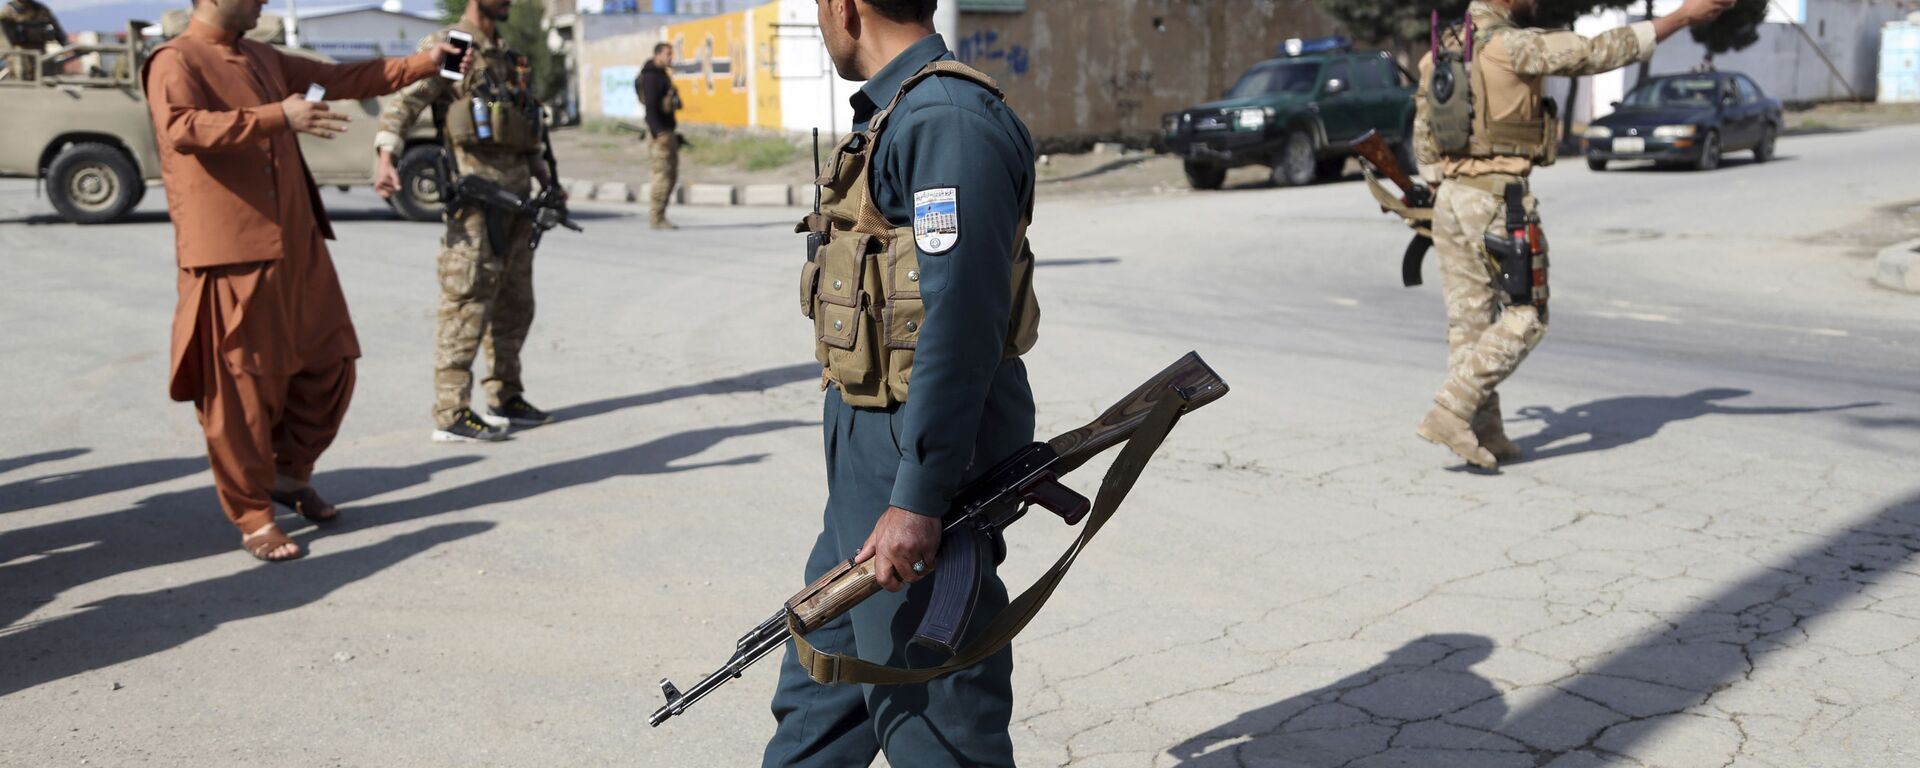 Афганские силовики прибыли на место где произошел взрыв в мечети 24 мая 2019  - Sputnik Тоҷикистон, 1920, 26.07.2021